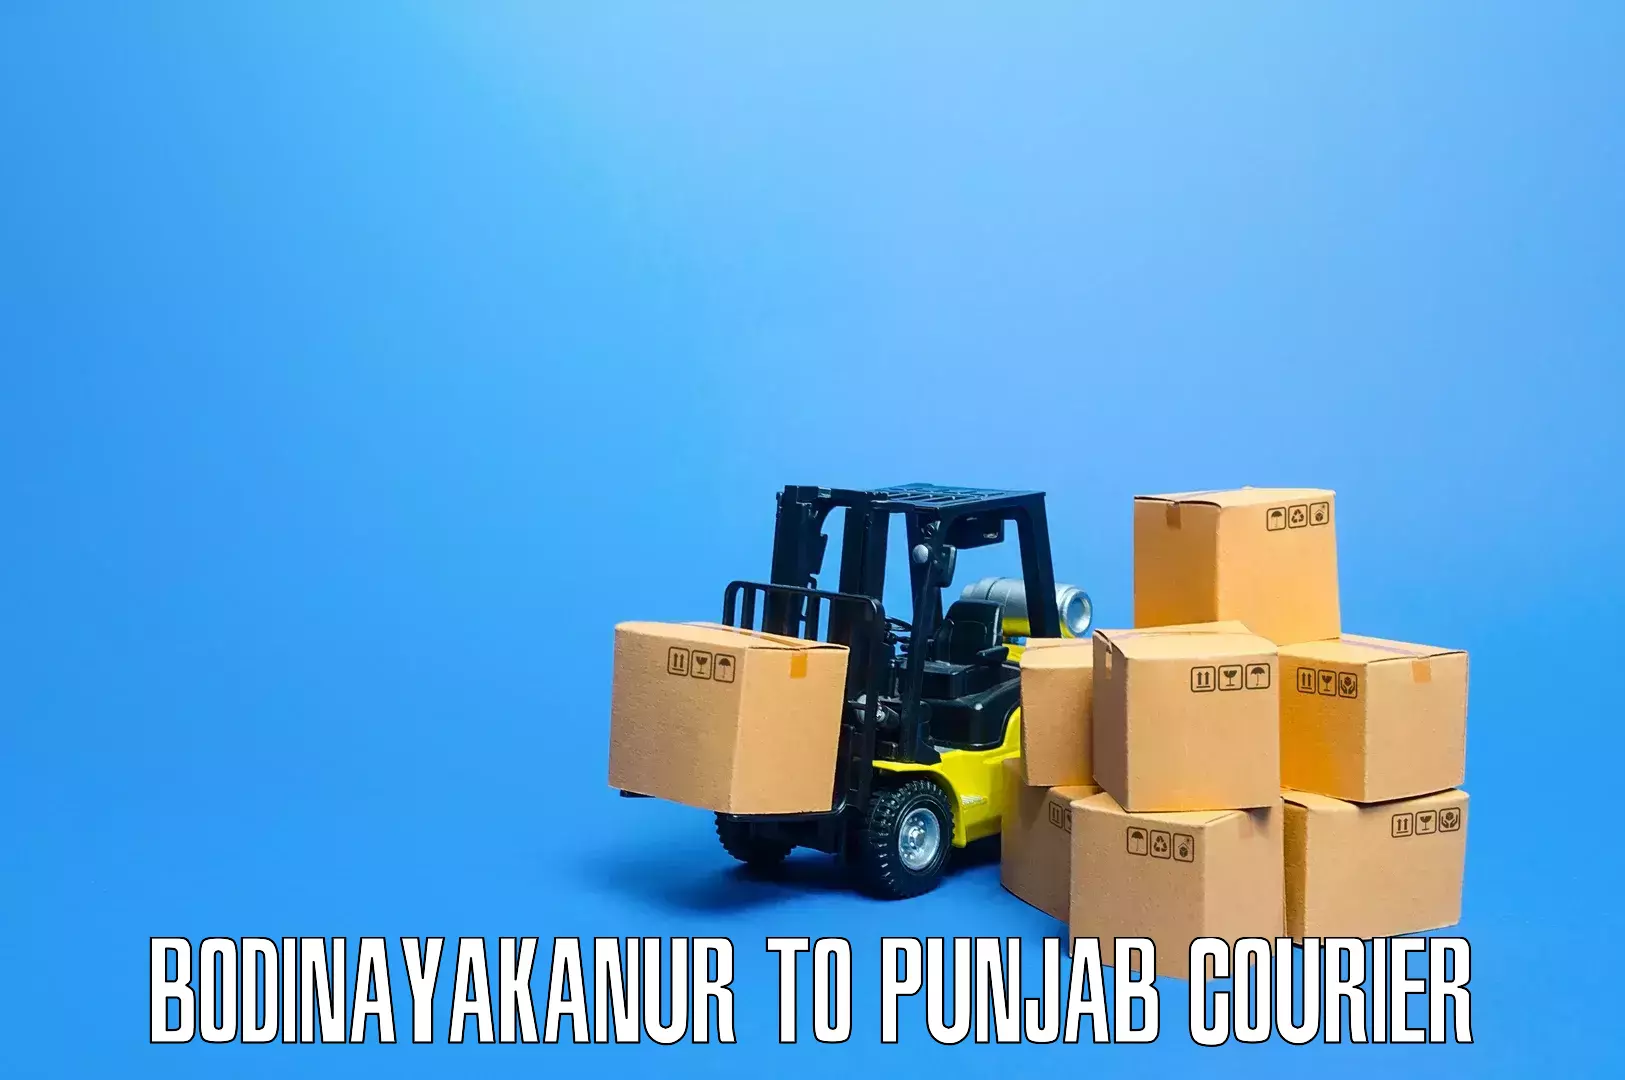 Efficient packing services Bodinayakanur to Punjab